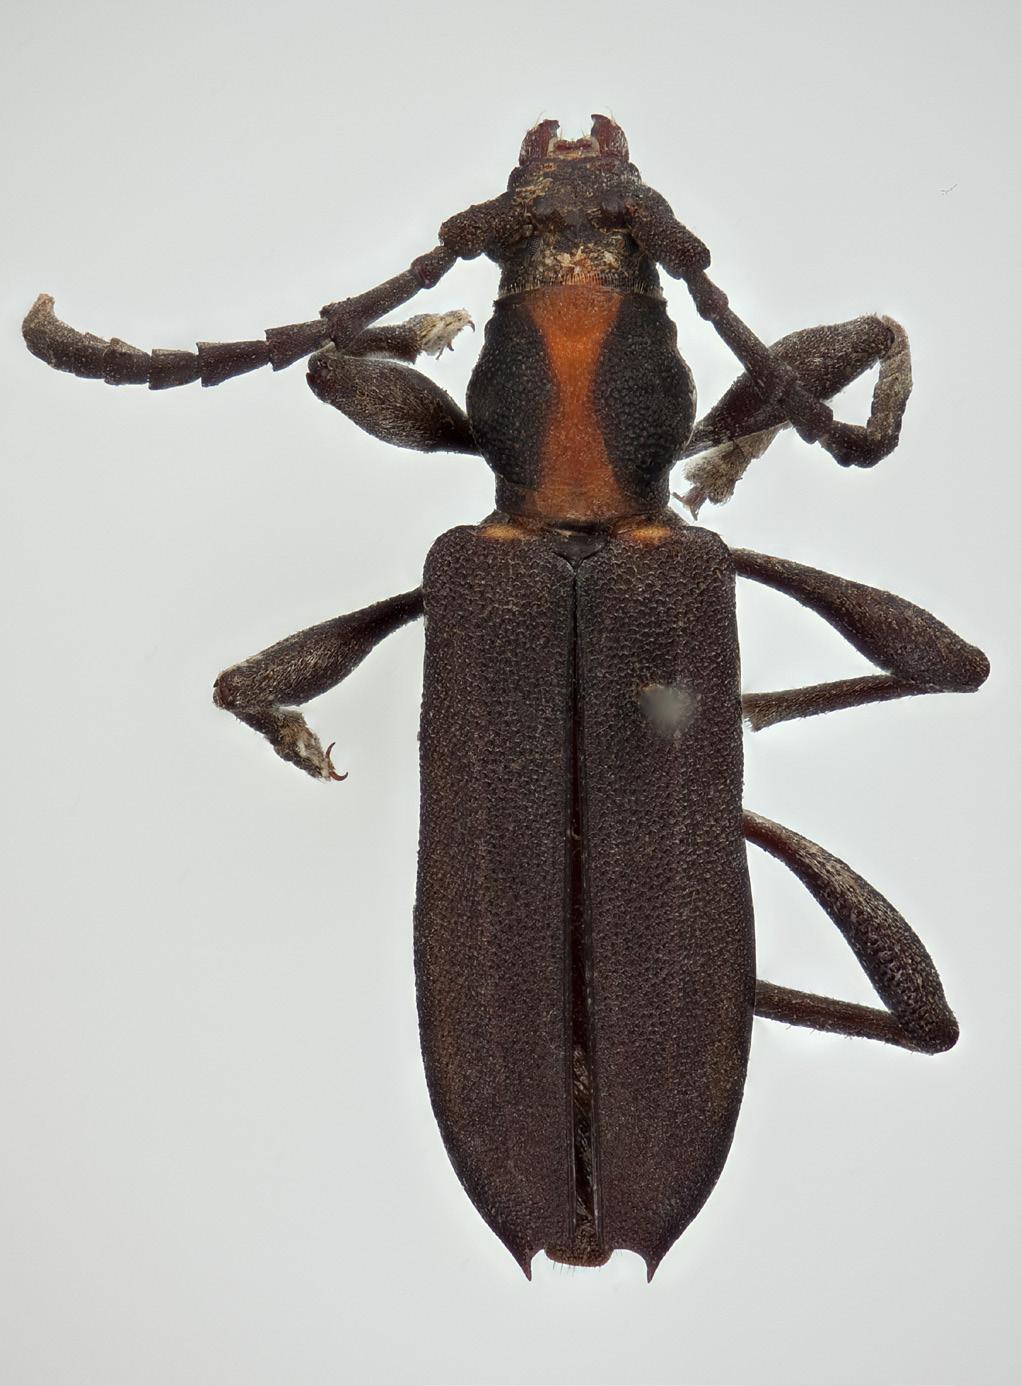 Norwegian Journal of Entomology 60, 246 282 (2013) 15c 15d FIGURES 15c d. D. bicolor. 15c. D. bicolor ssp. ivorensis ssp.n. HT, 9.5mm (NHM). 15d. D. bicolor ssp. puchneri ssp.n. HT, 10mm (APG).